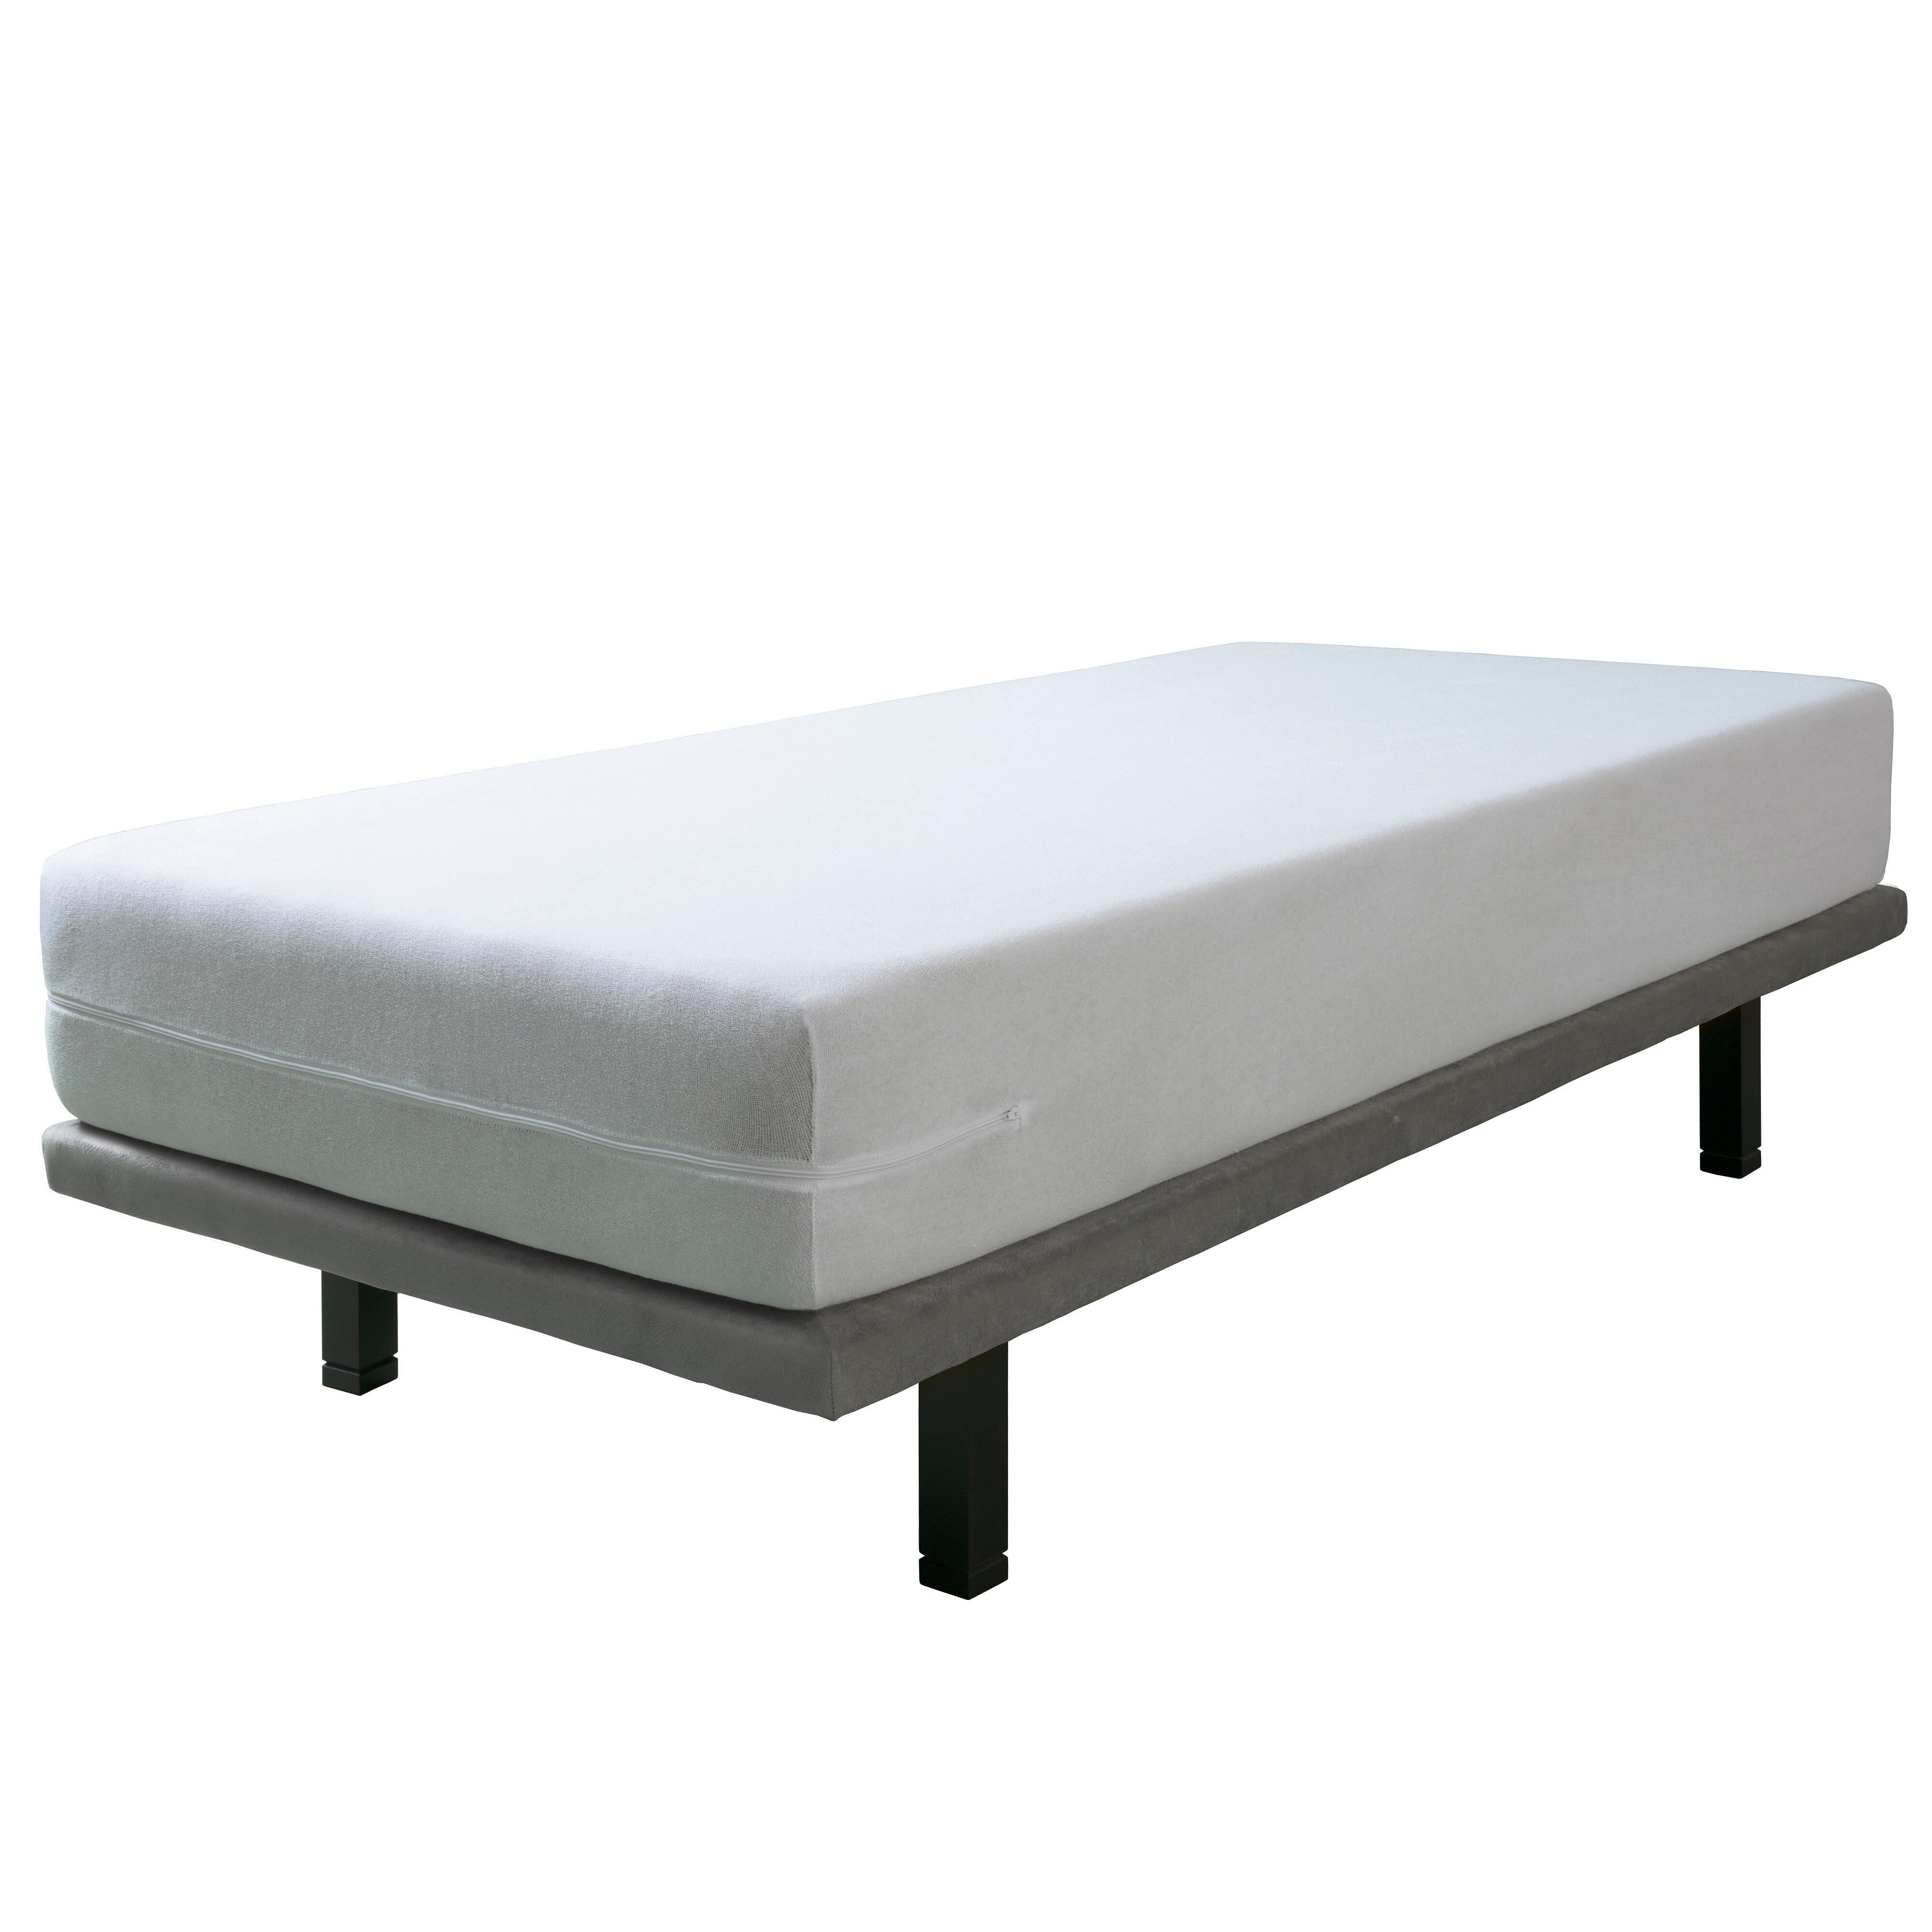 Funda de colchón rizo elástico tela algodón blanco para cama de 150 cm